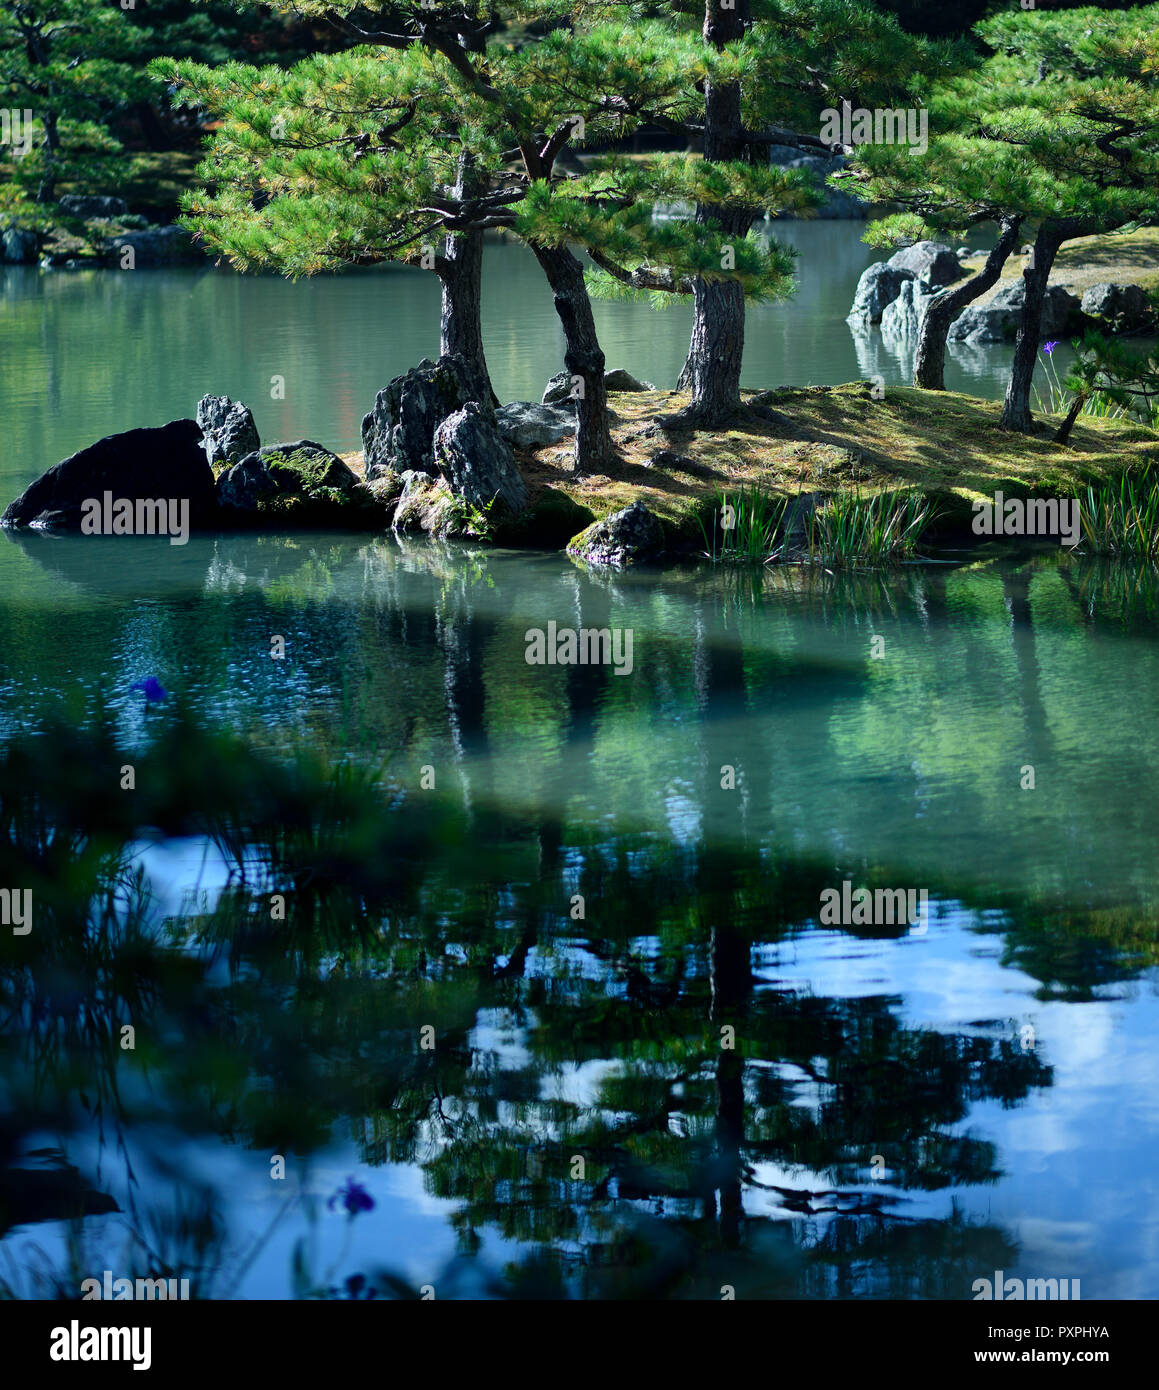 Sereno paisaje de pinos sobre una isla en el estanque de un jardín zen japonés con bellos reflejos en el agua. Rokuon-ji, Kioto, Japón. Foto de stock